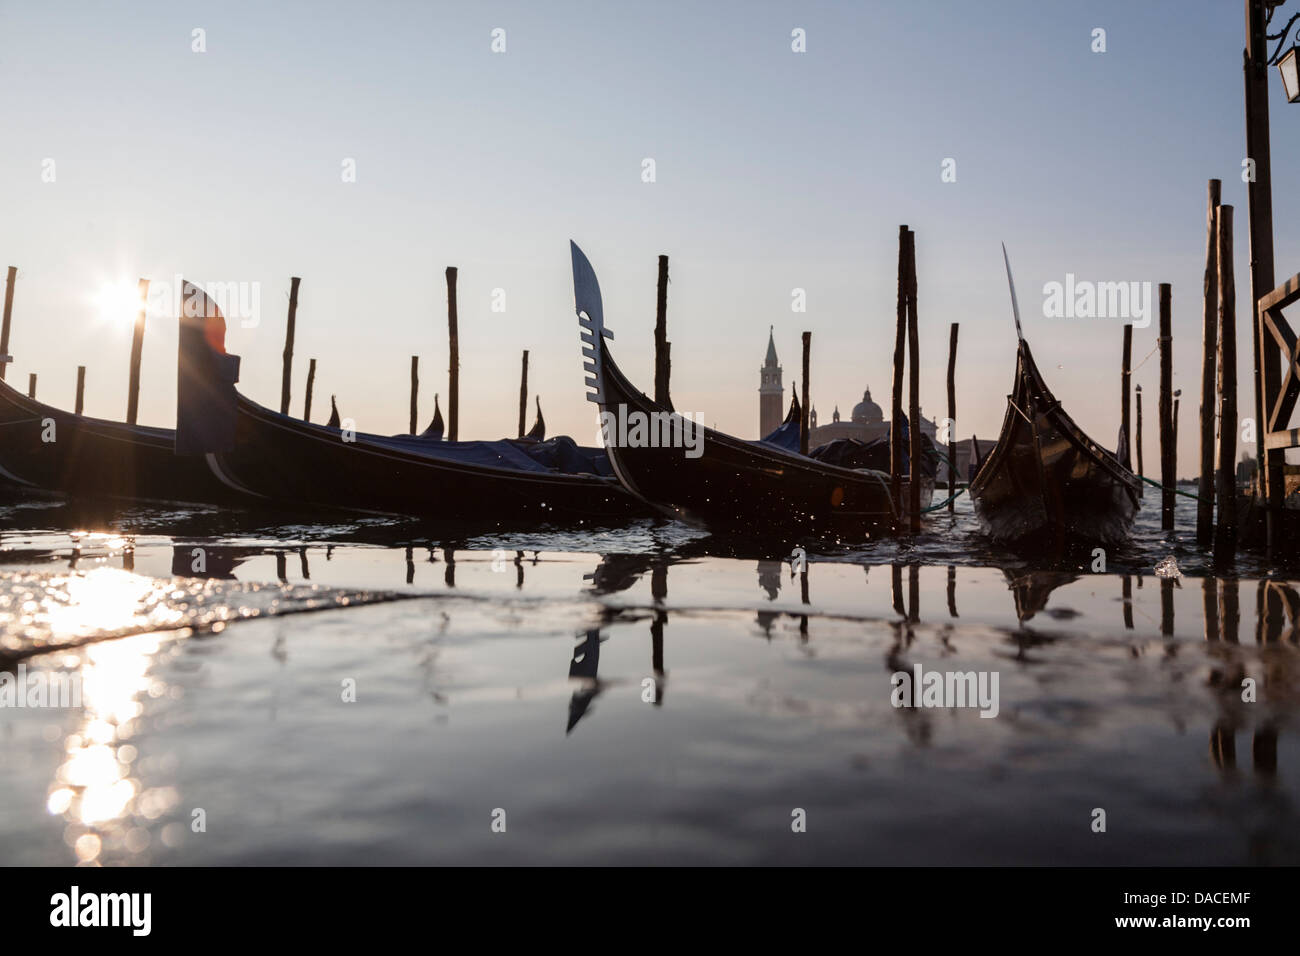 Gondole con la riflessione e l'acqua splash, Venezia, Italia Foto Stock